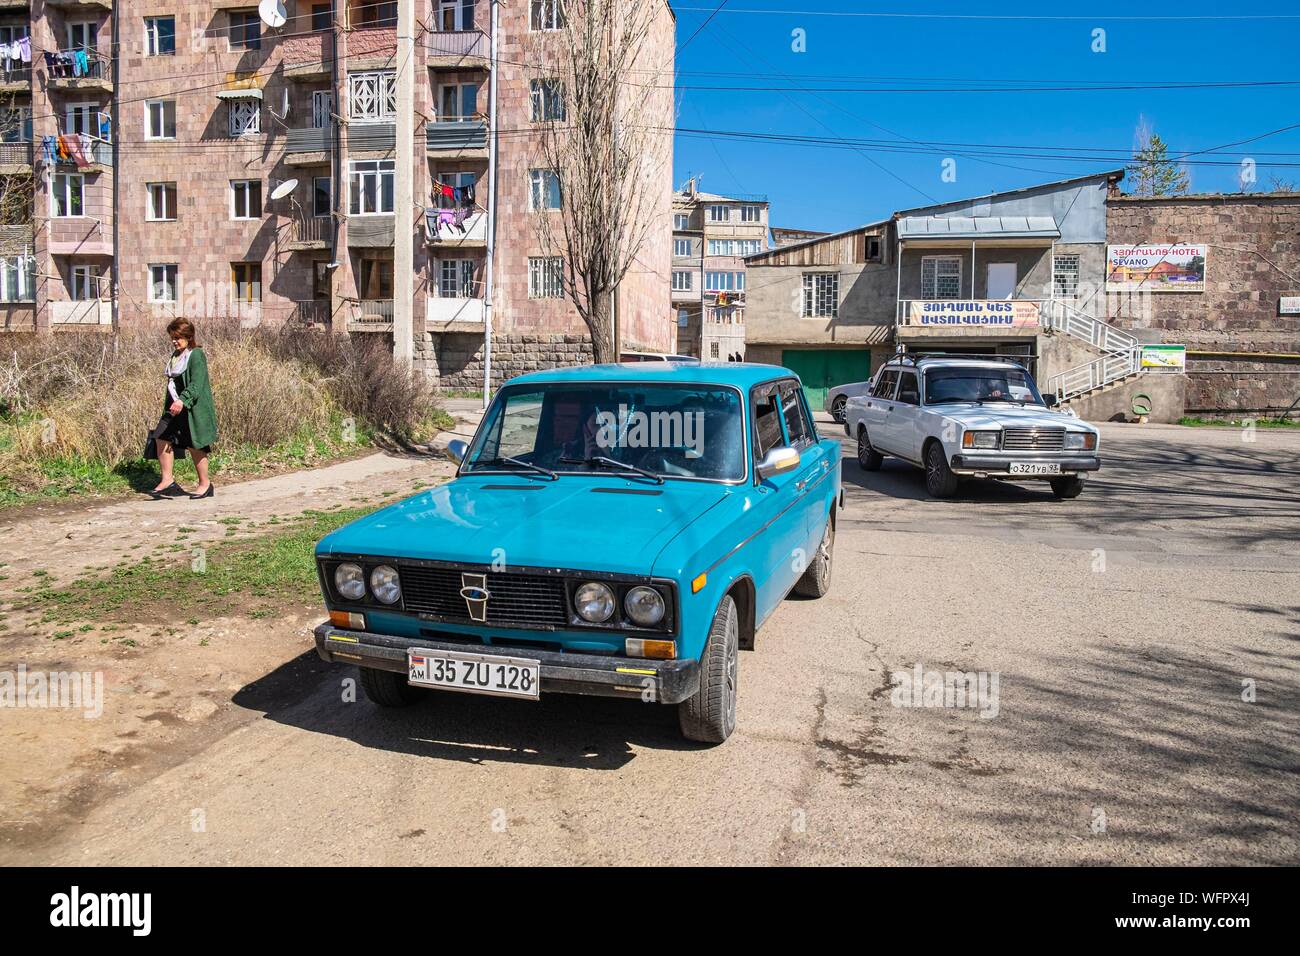 Armenia, Gegharkunik región, Sevan, al centro de la ciudad, los coches soviéticos Foto de stock